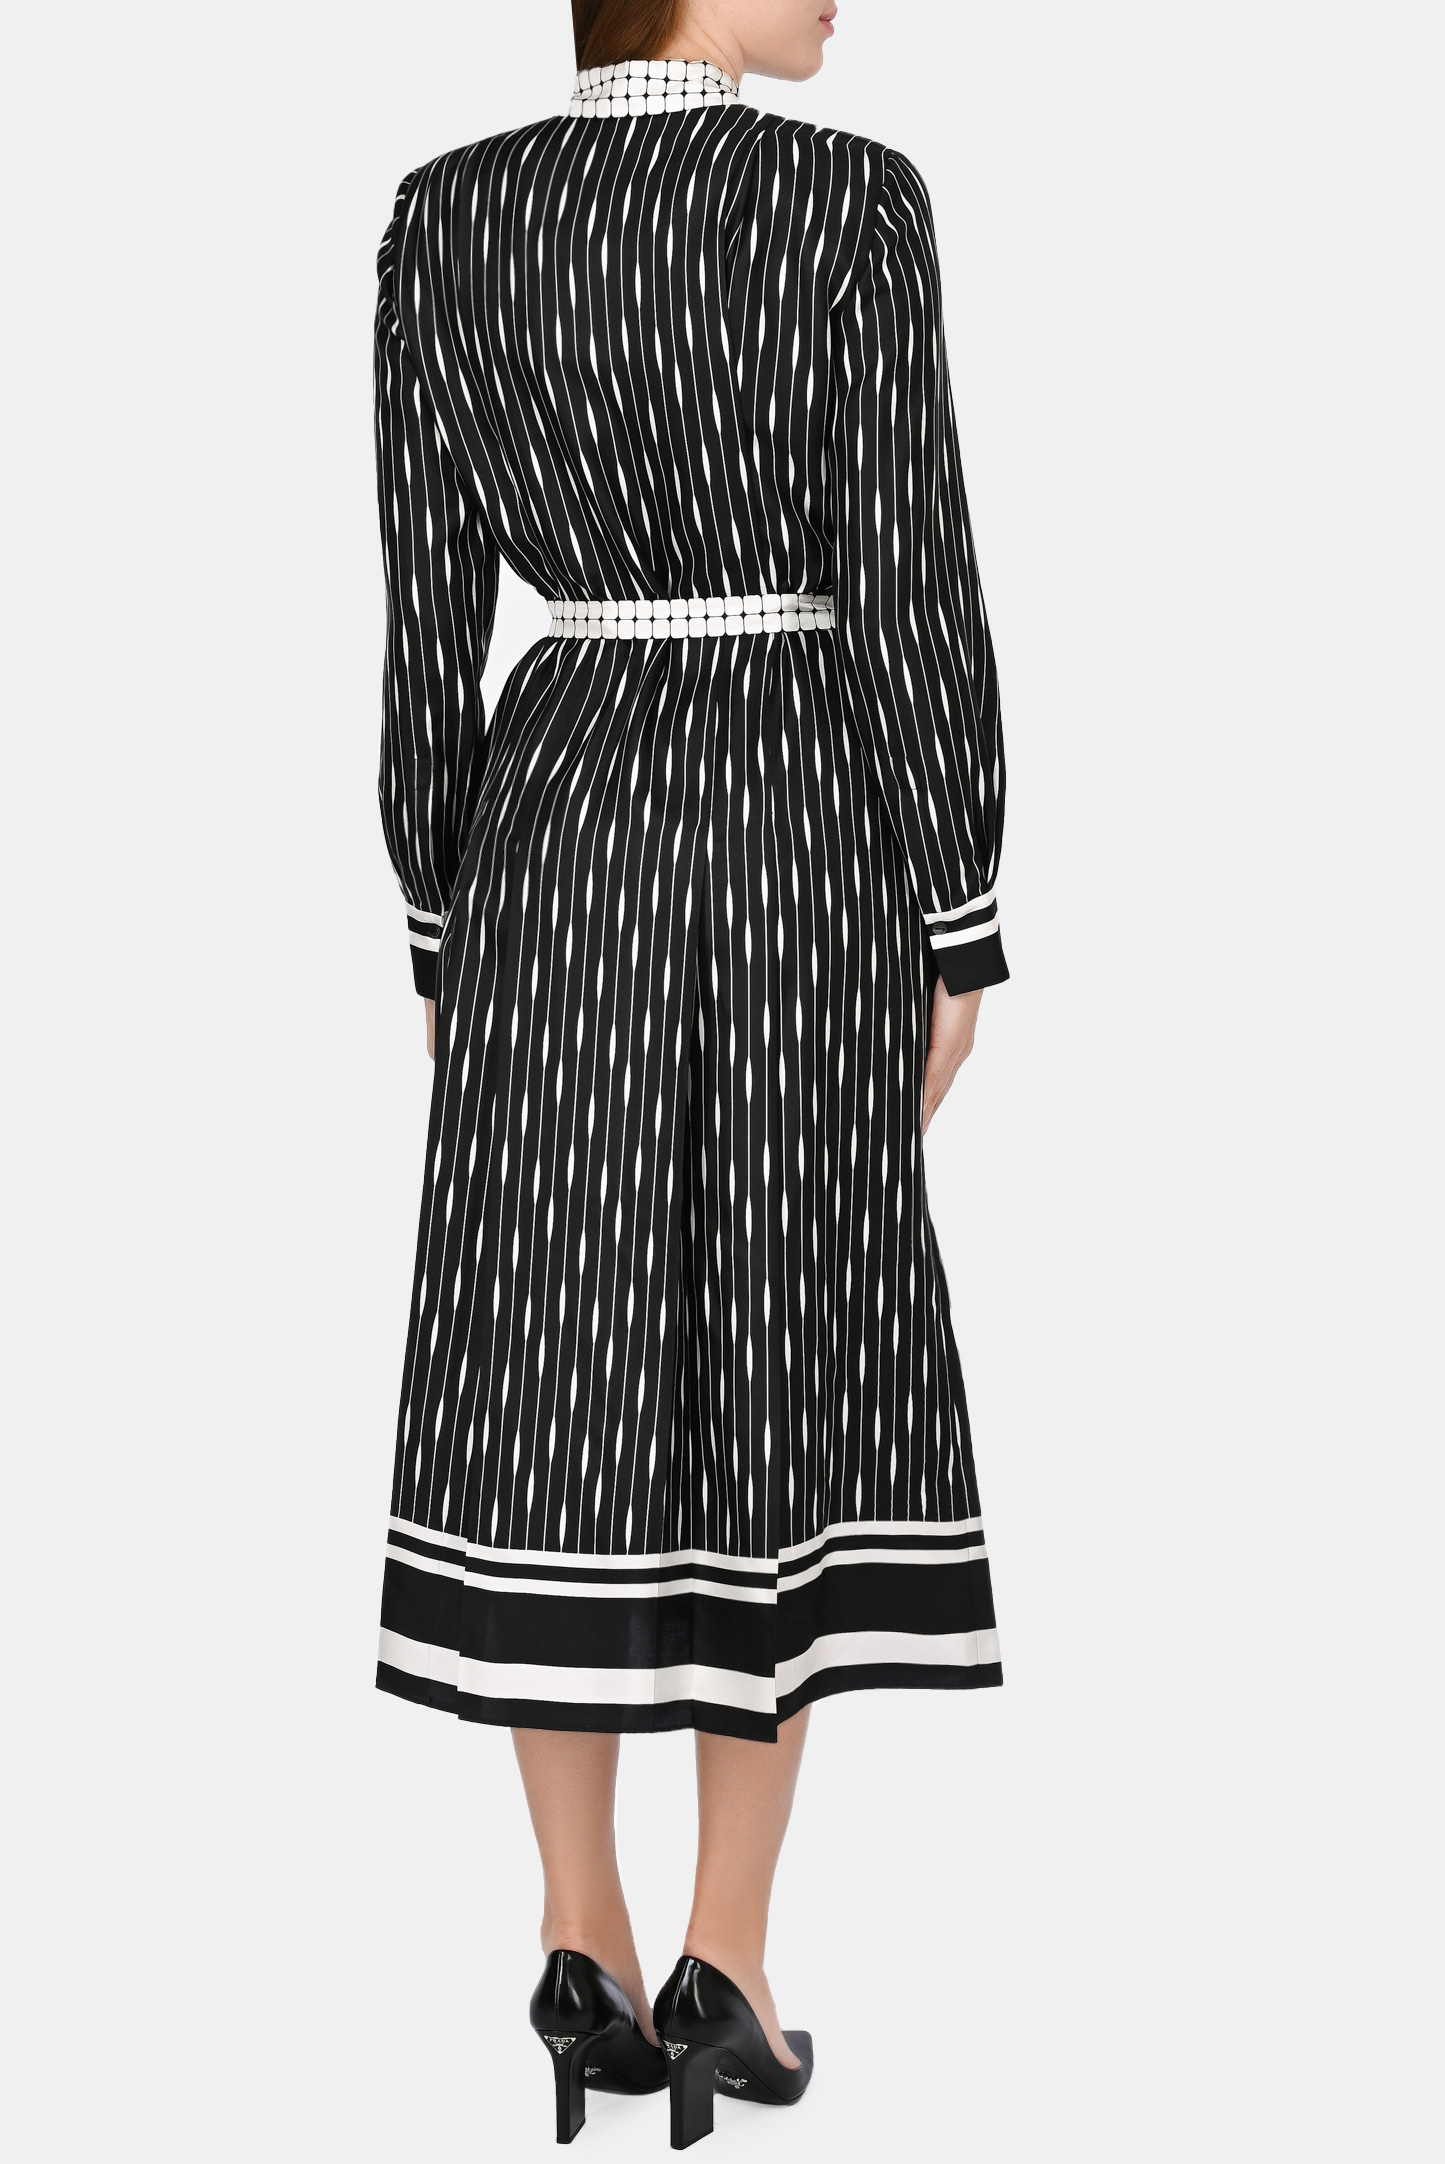 Платье LORO PIANA F1-FAL7225, цвет: Черно-белый, Женский